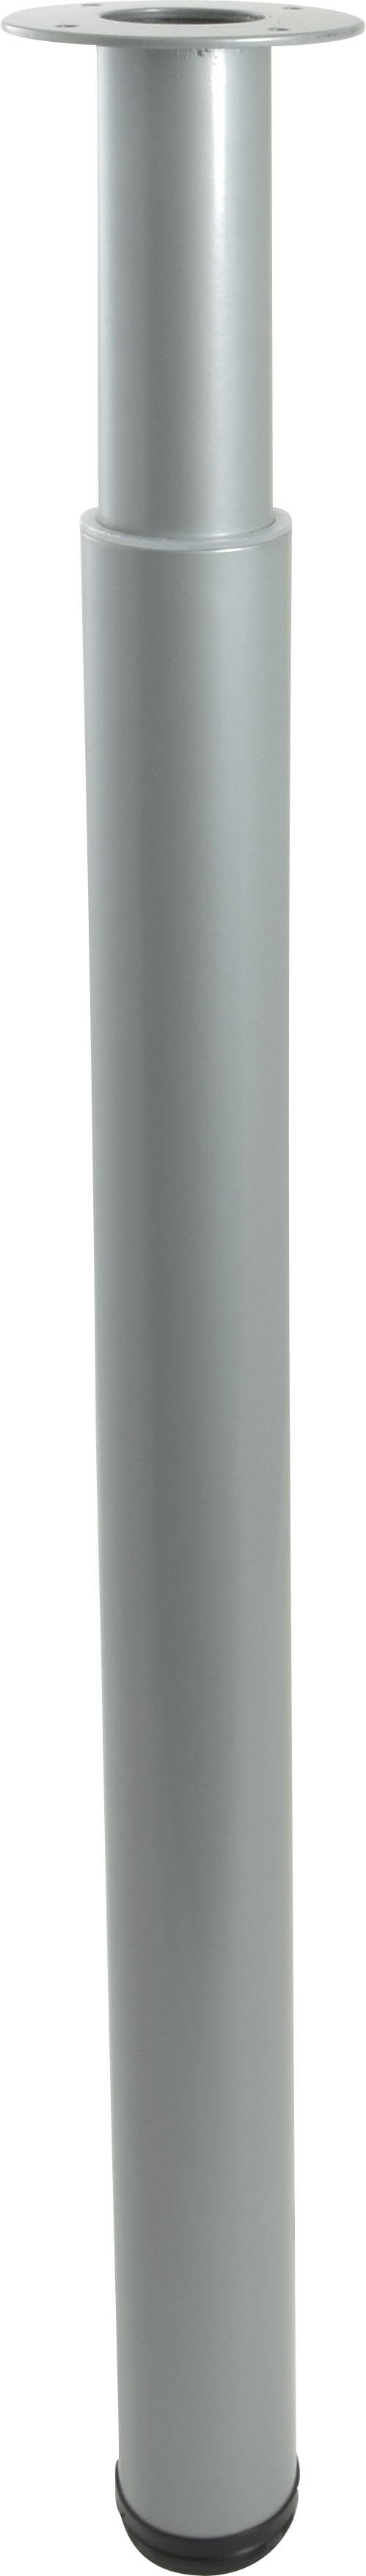 Pied acier cylindrique  réglable hauteur 700/1100 mm Ø60 mm gris alu - BAR PLUS 